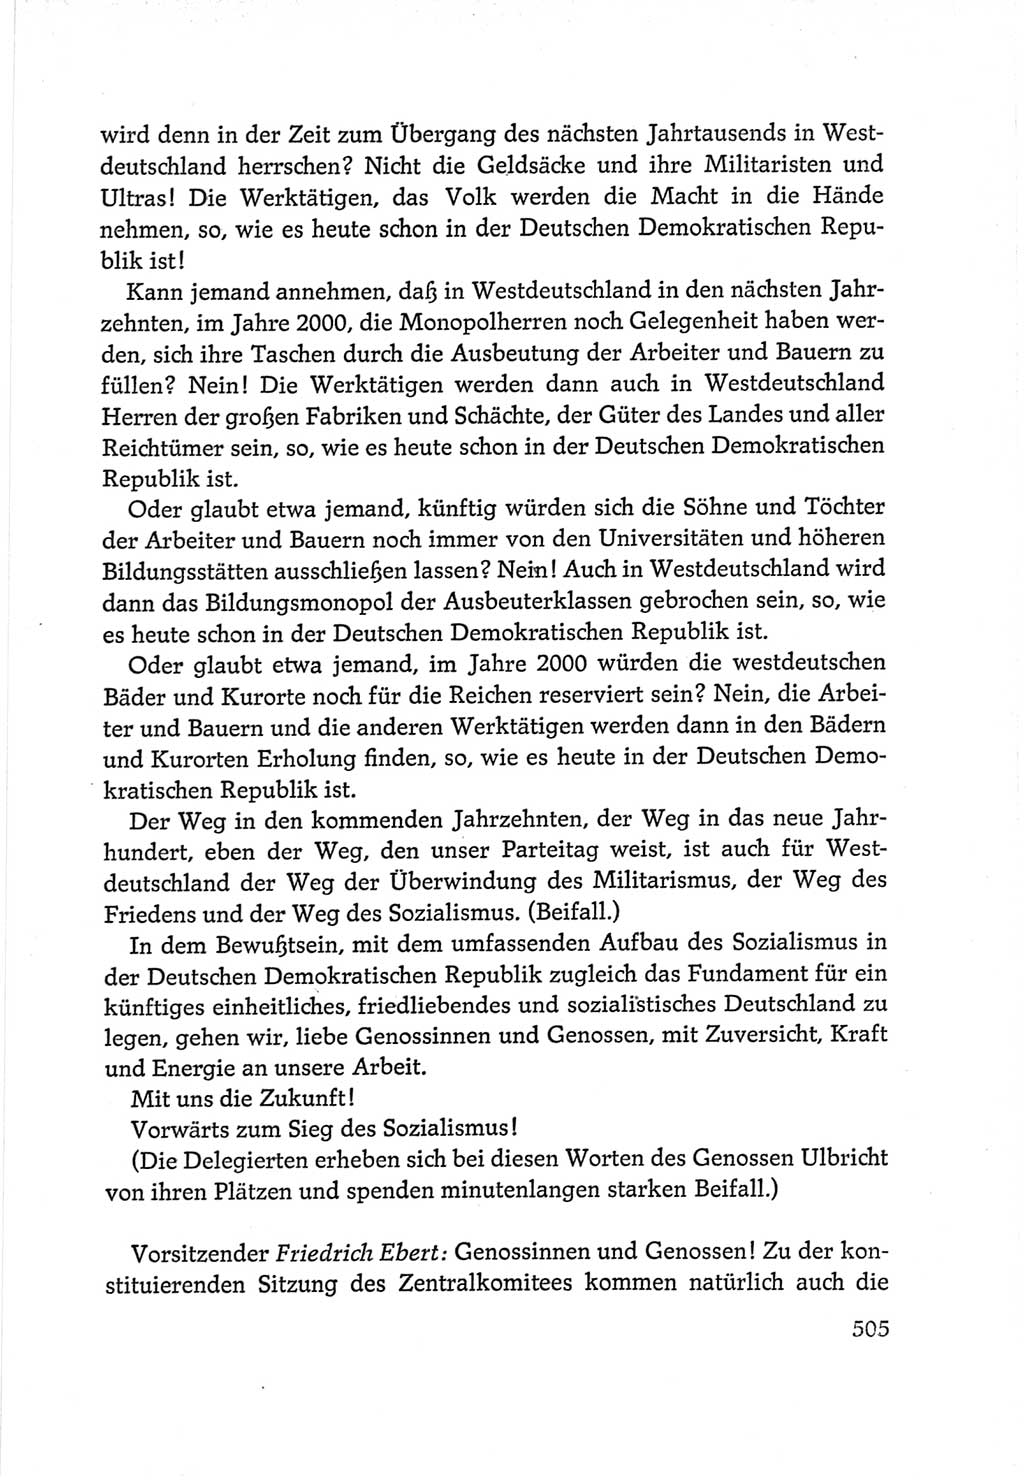 Protokoll der Verhandlungen des Ⅵ. Parteitages der Sozialistischen Einheitspartei Deutschlands (SED) [Deutsche Demokratische Republik (DDR)] 1963, Band Ⅱ, Seite 505 (Prot. Verh. Ⅵ. PT SED DDR 1963, Bd. Ⅱ, S. 505)